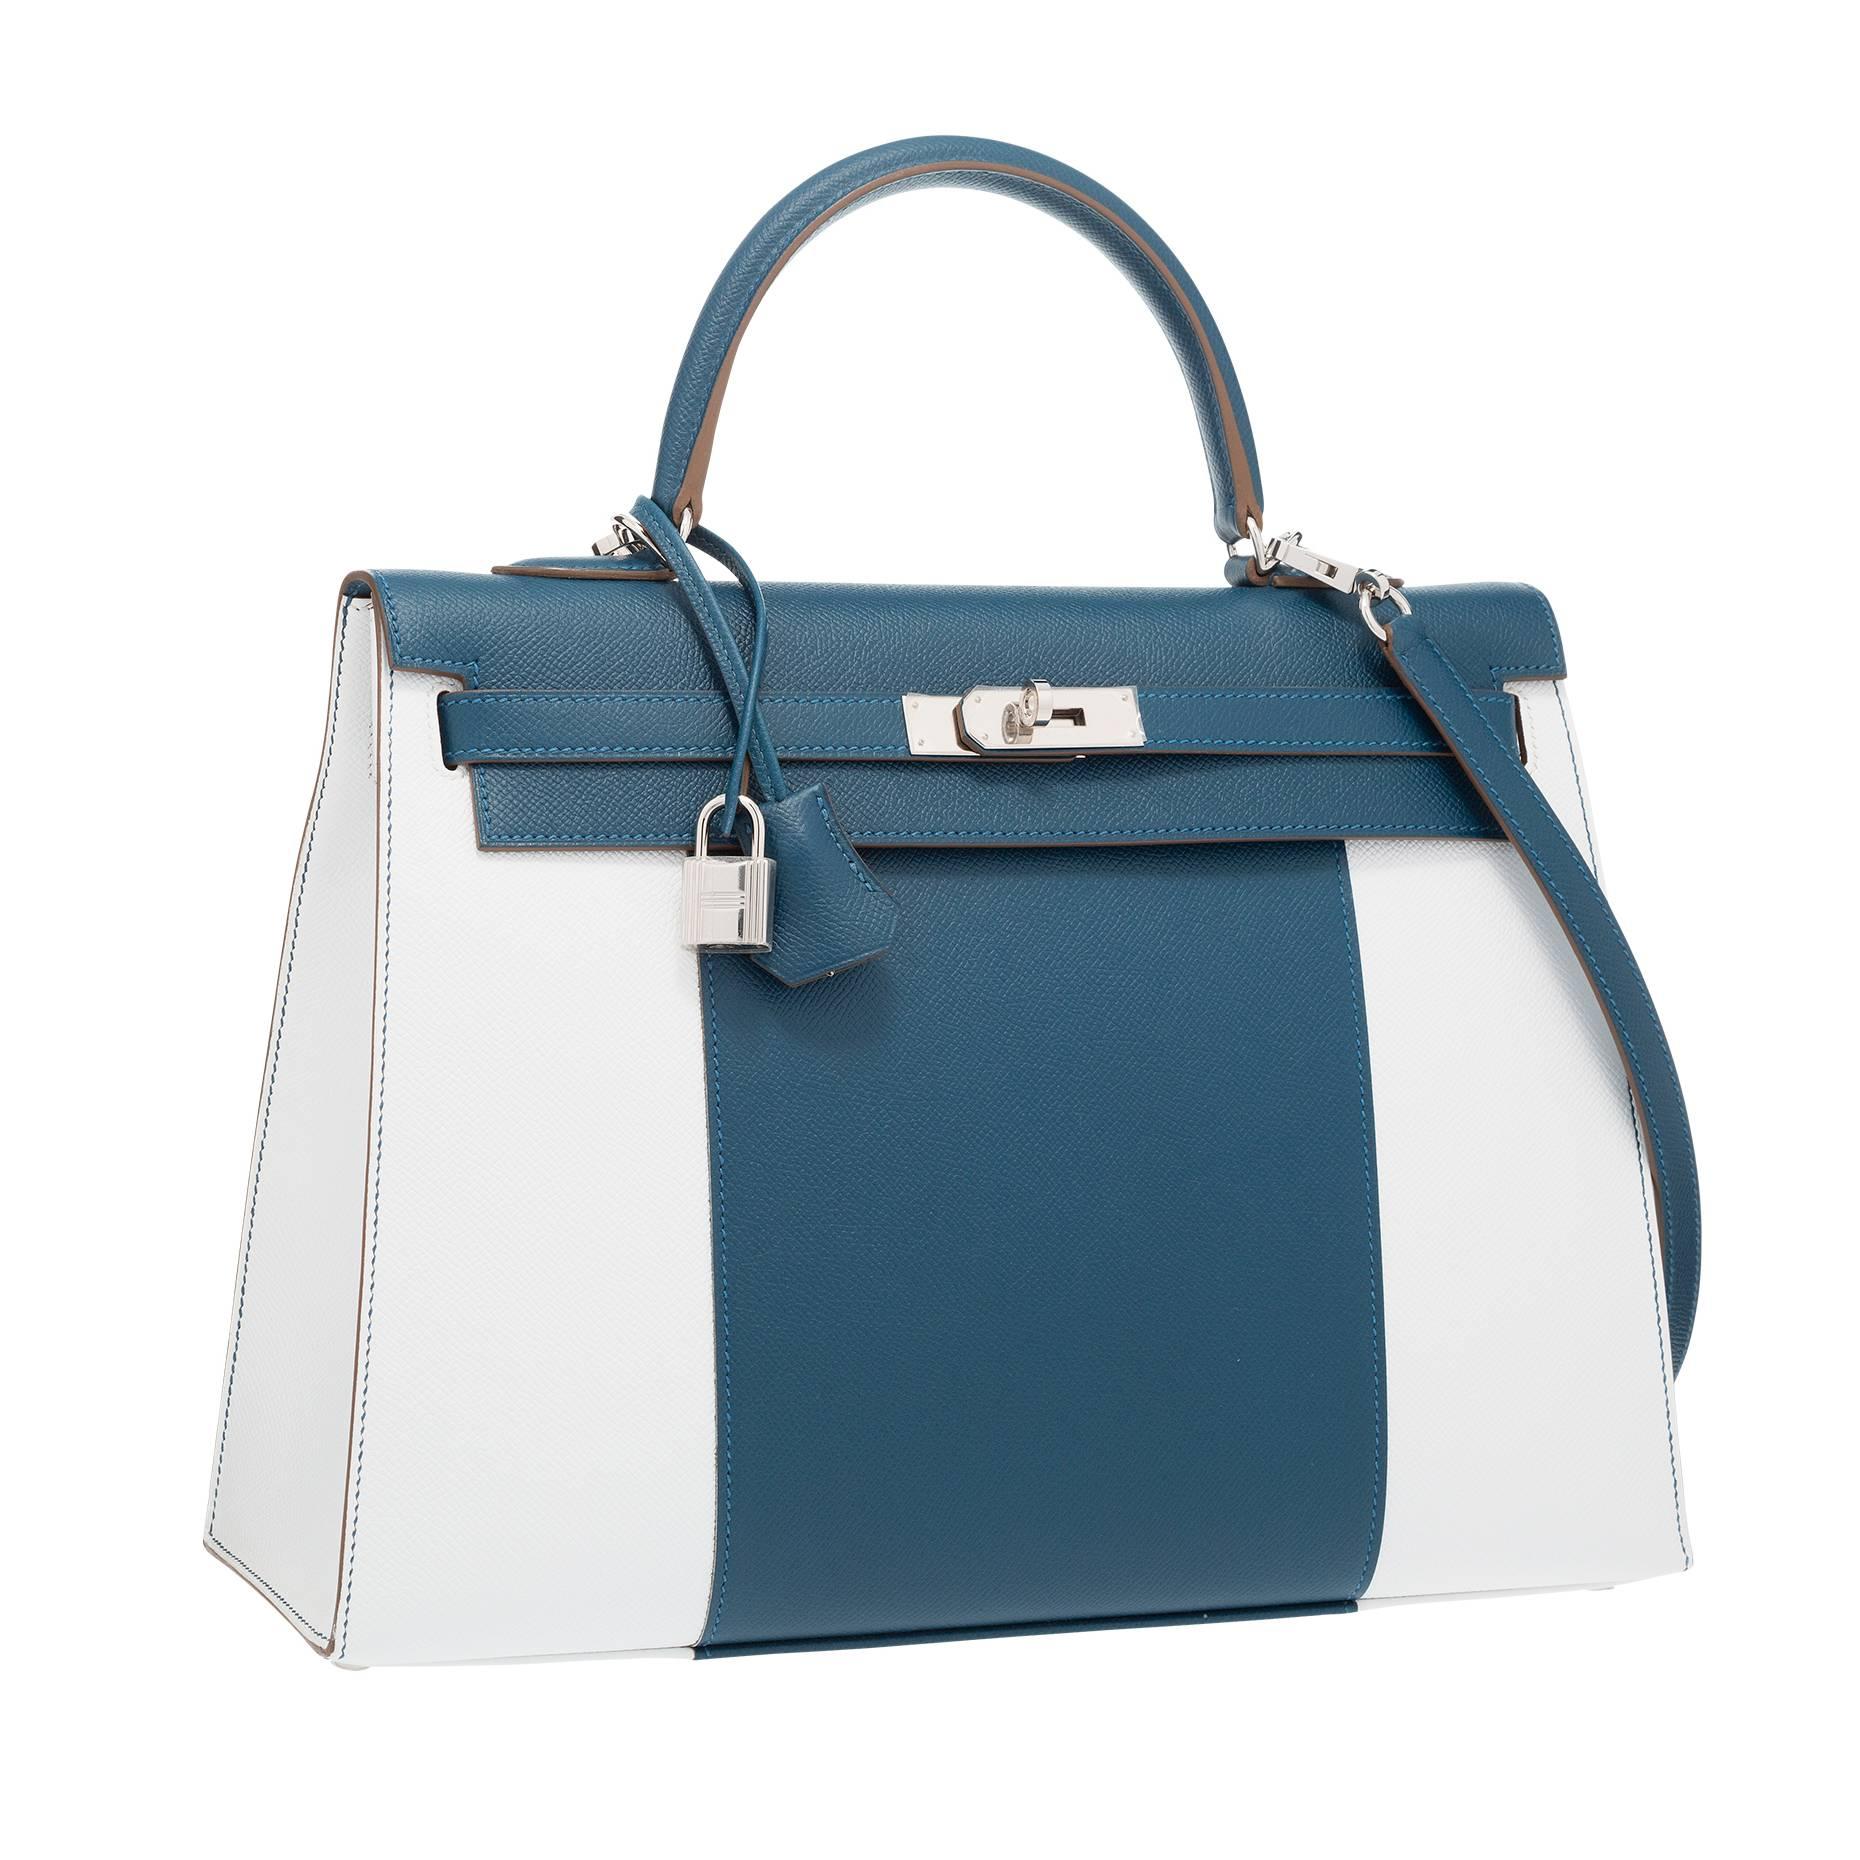 Hermes 35cm Blue Thalassa & White Epsom Leather Sellier Flag Kelly Bag